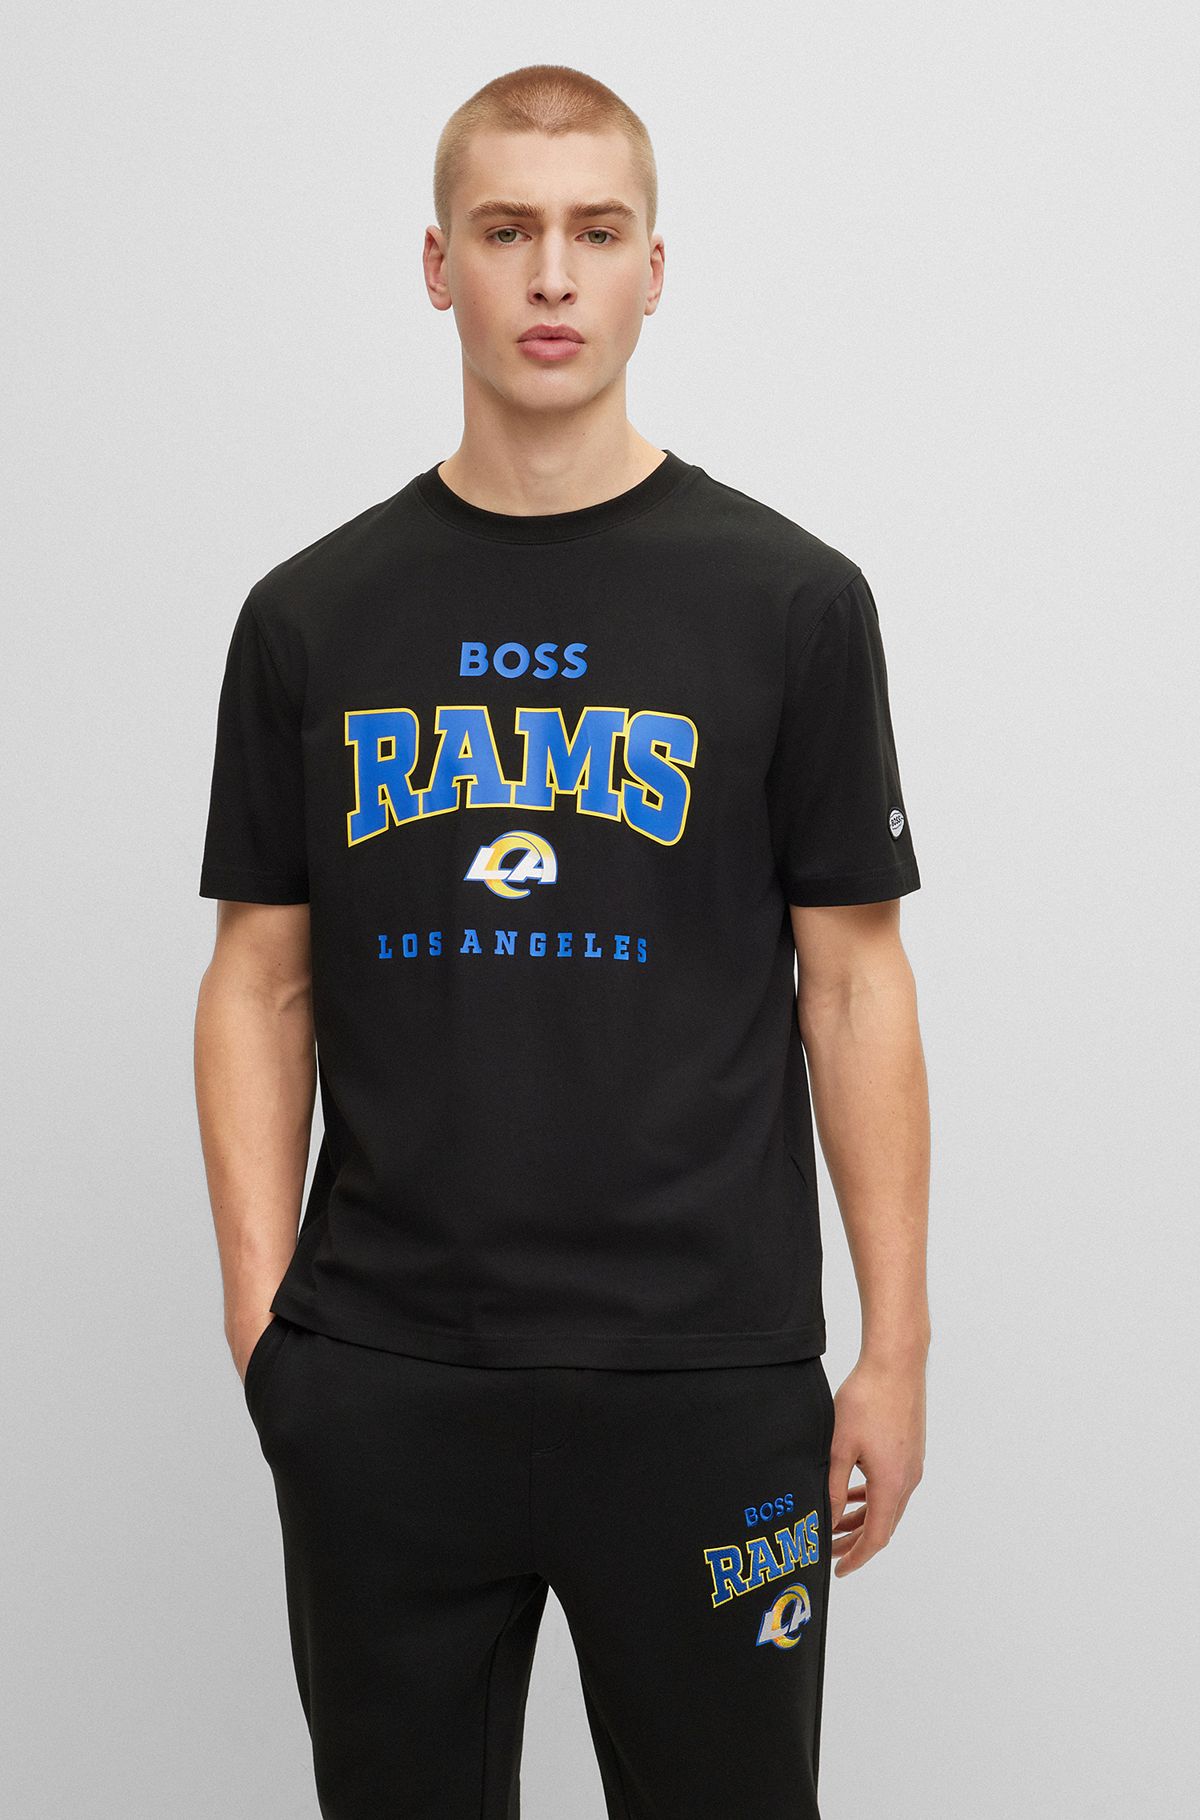 Camiseta de algodón elástico BOSS x NFL con detalle de la colaboración, Rams